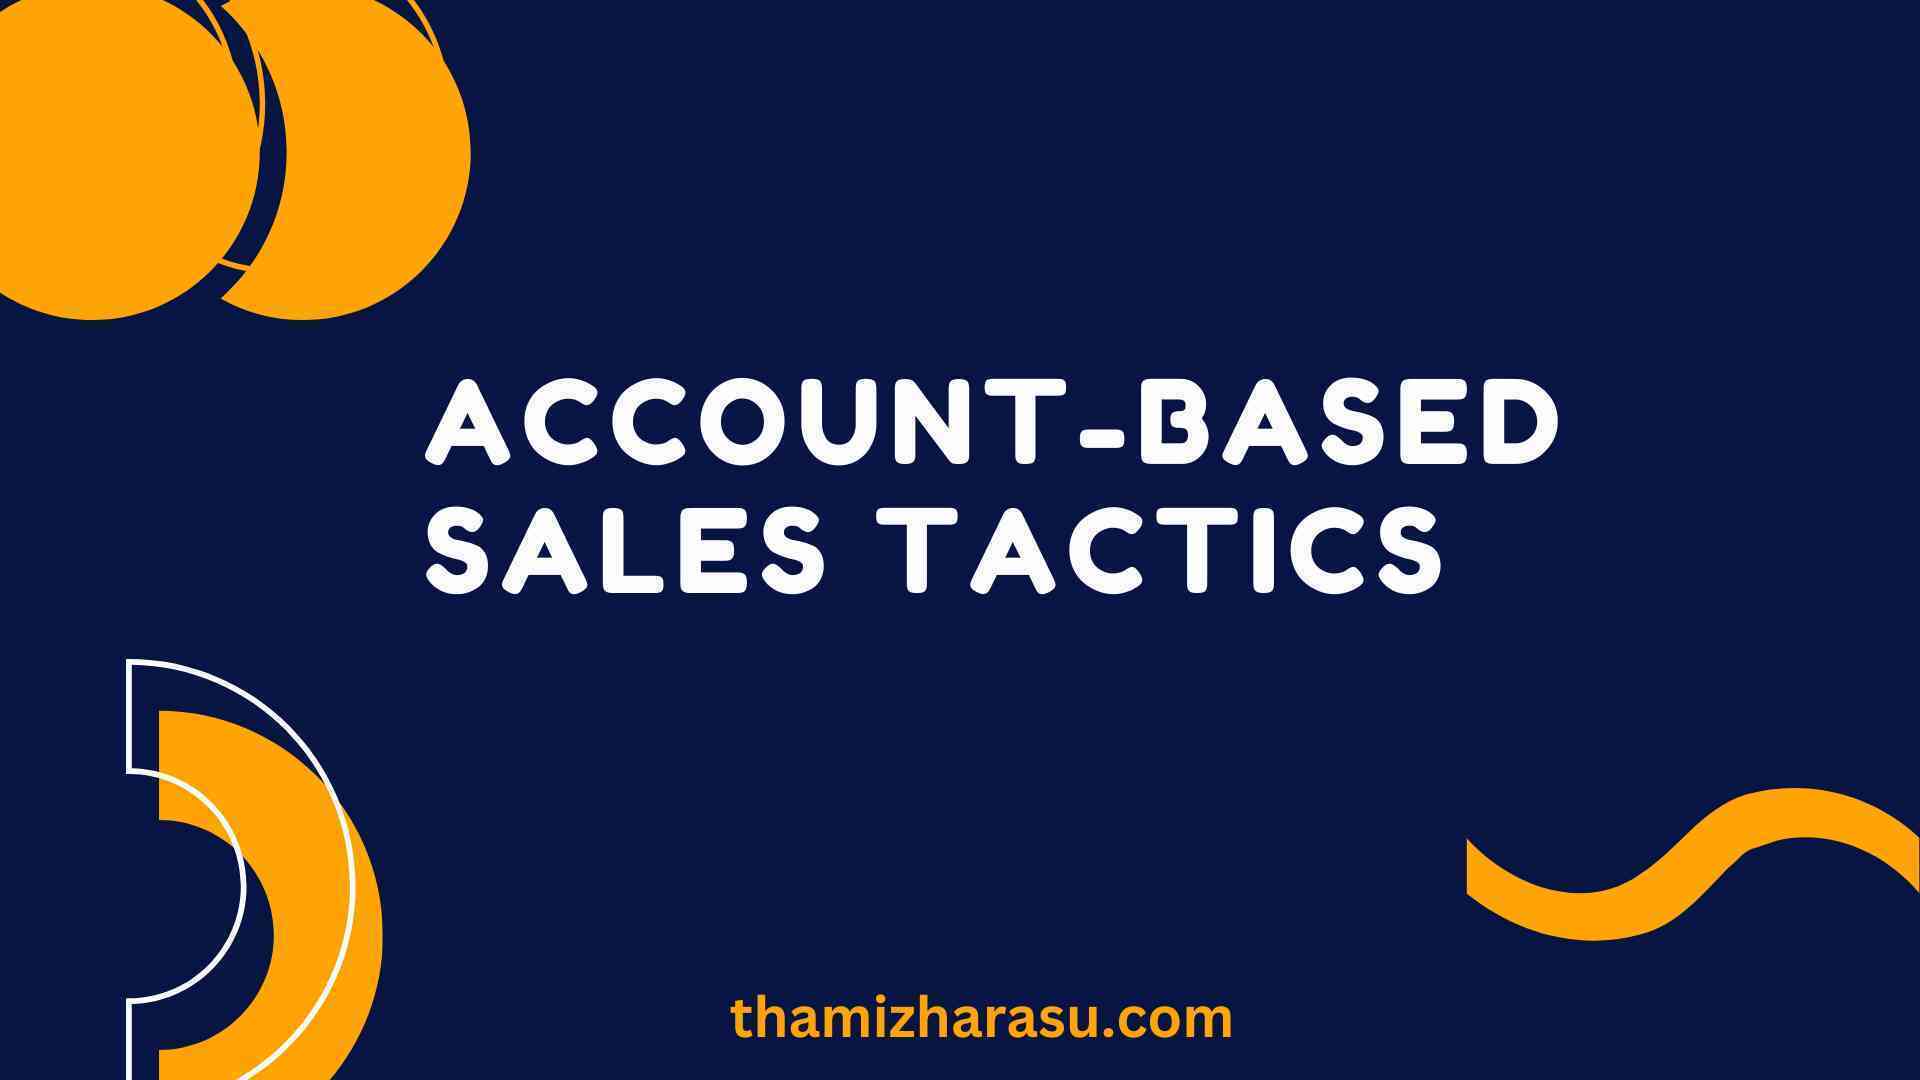 Account-based sales tactics